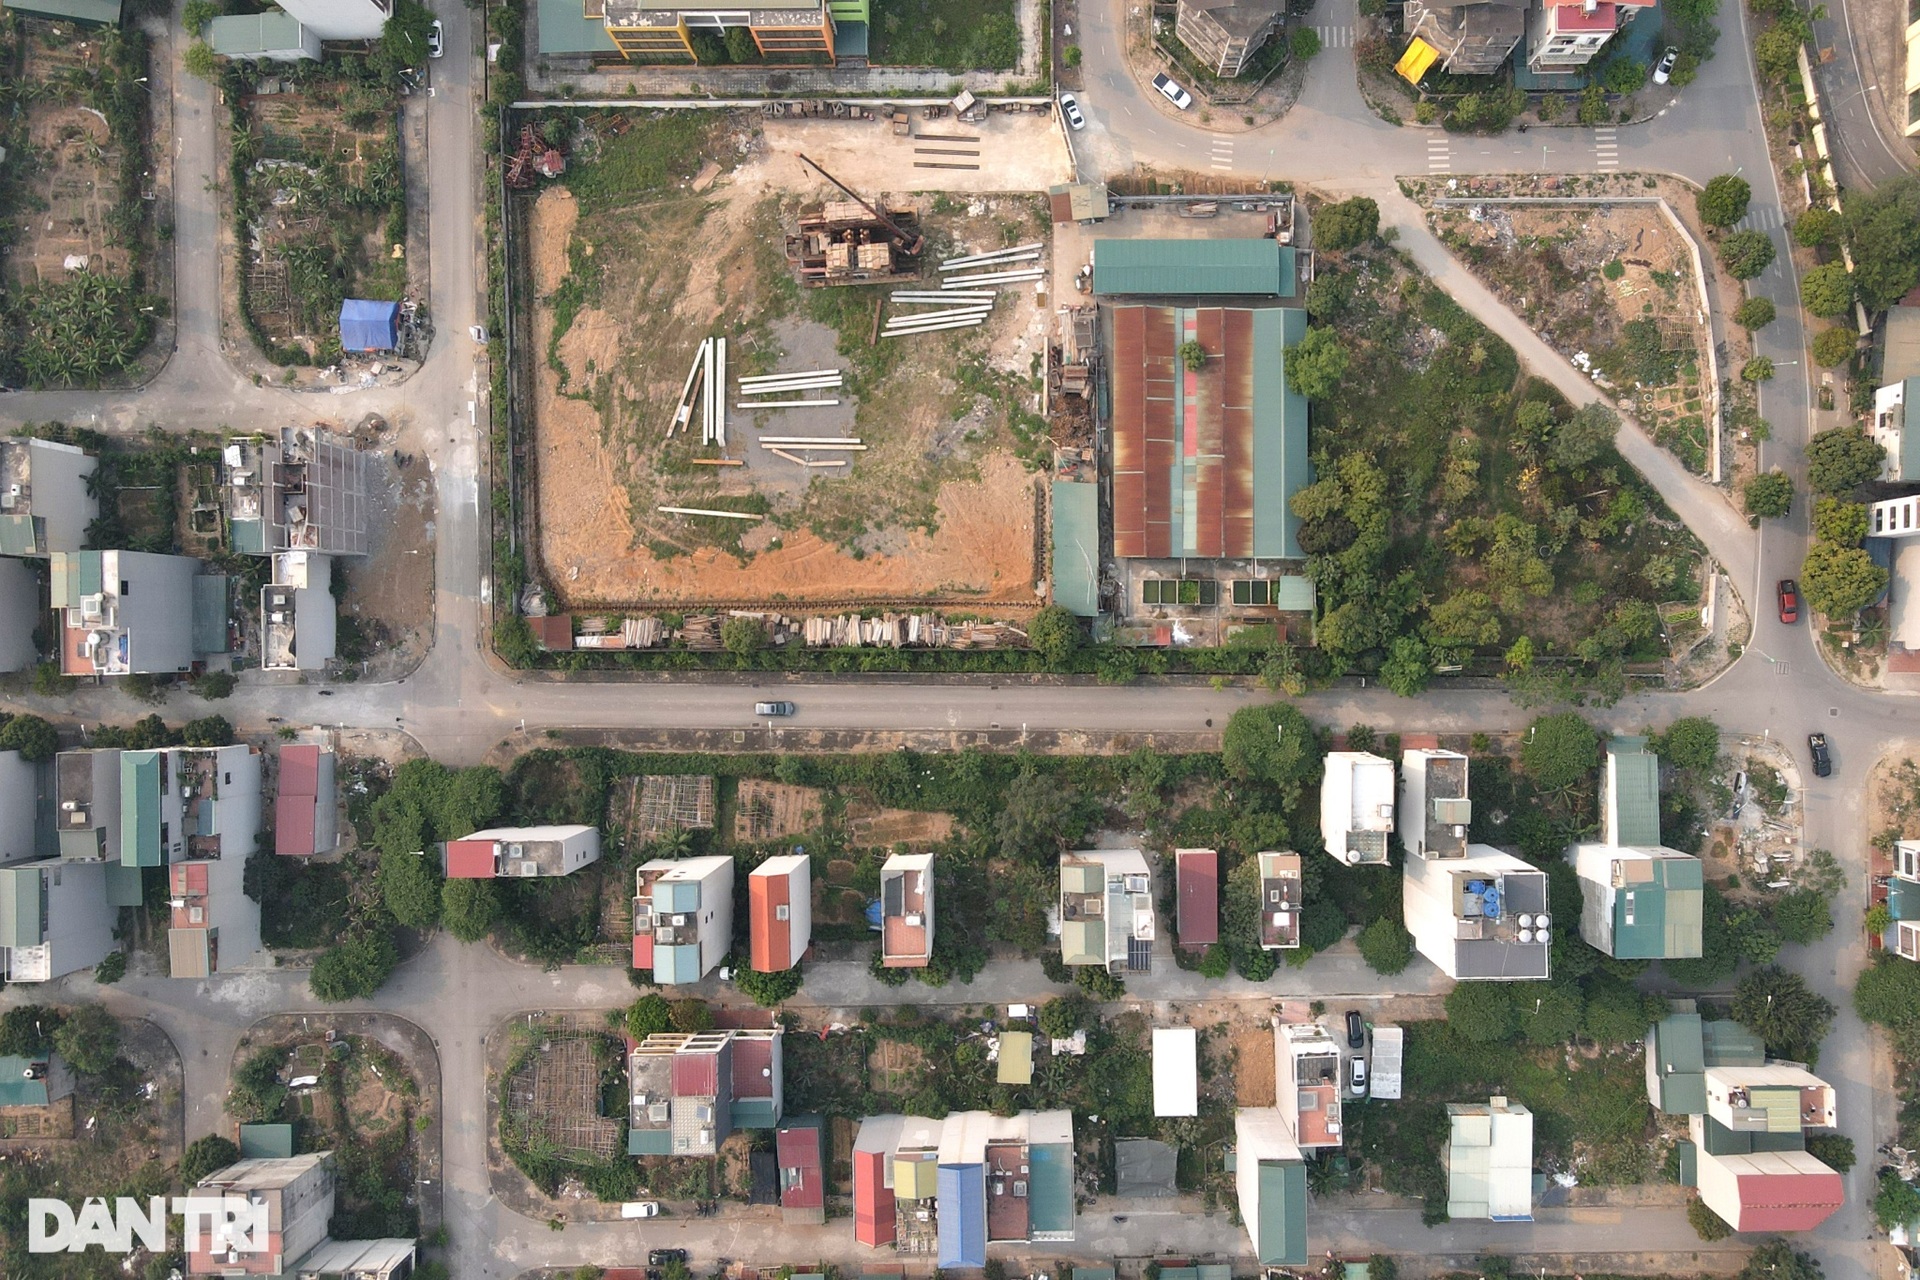 Hà Nội: Hàng loạt nhà rạn nứt phải chống nạng, dân mất ăn mất ngủ - 1